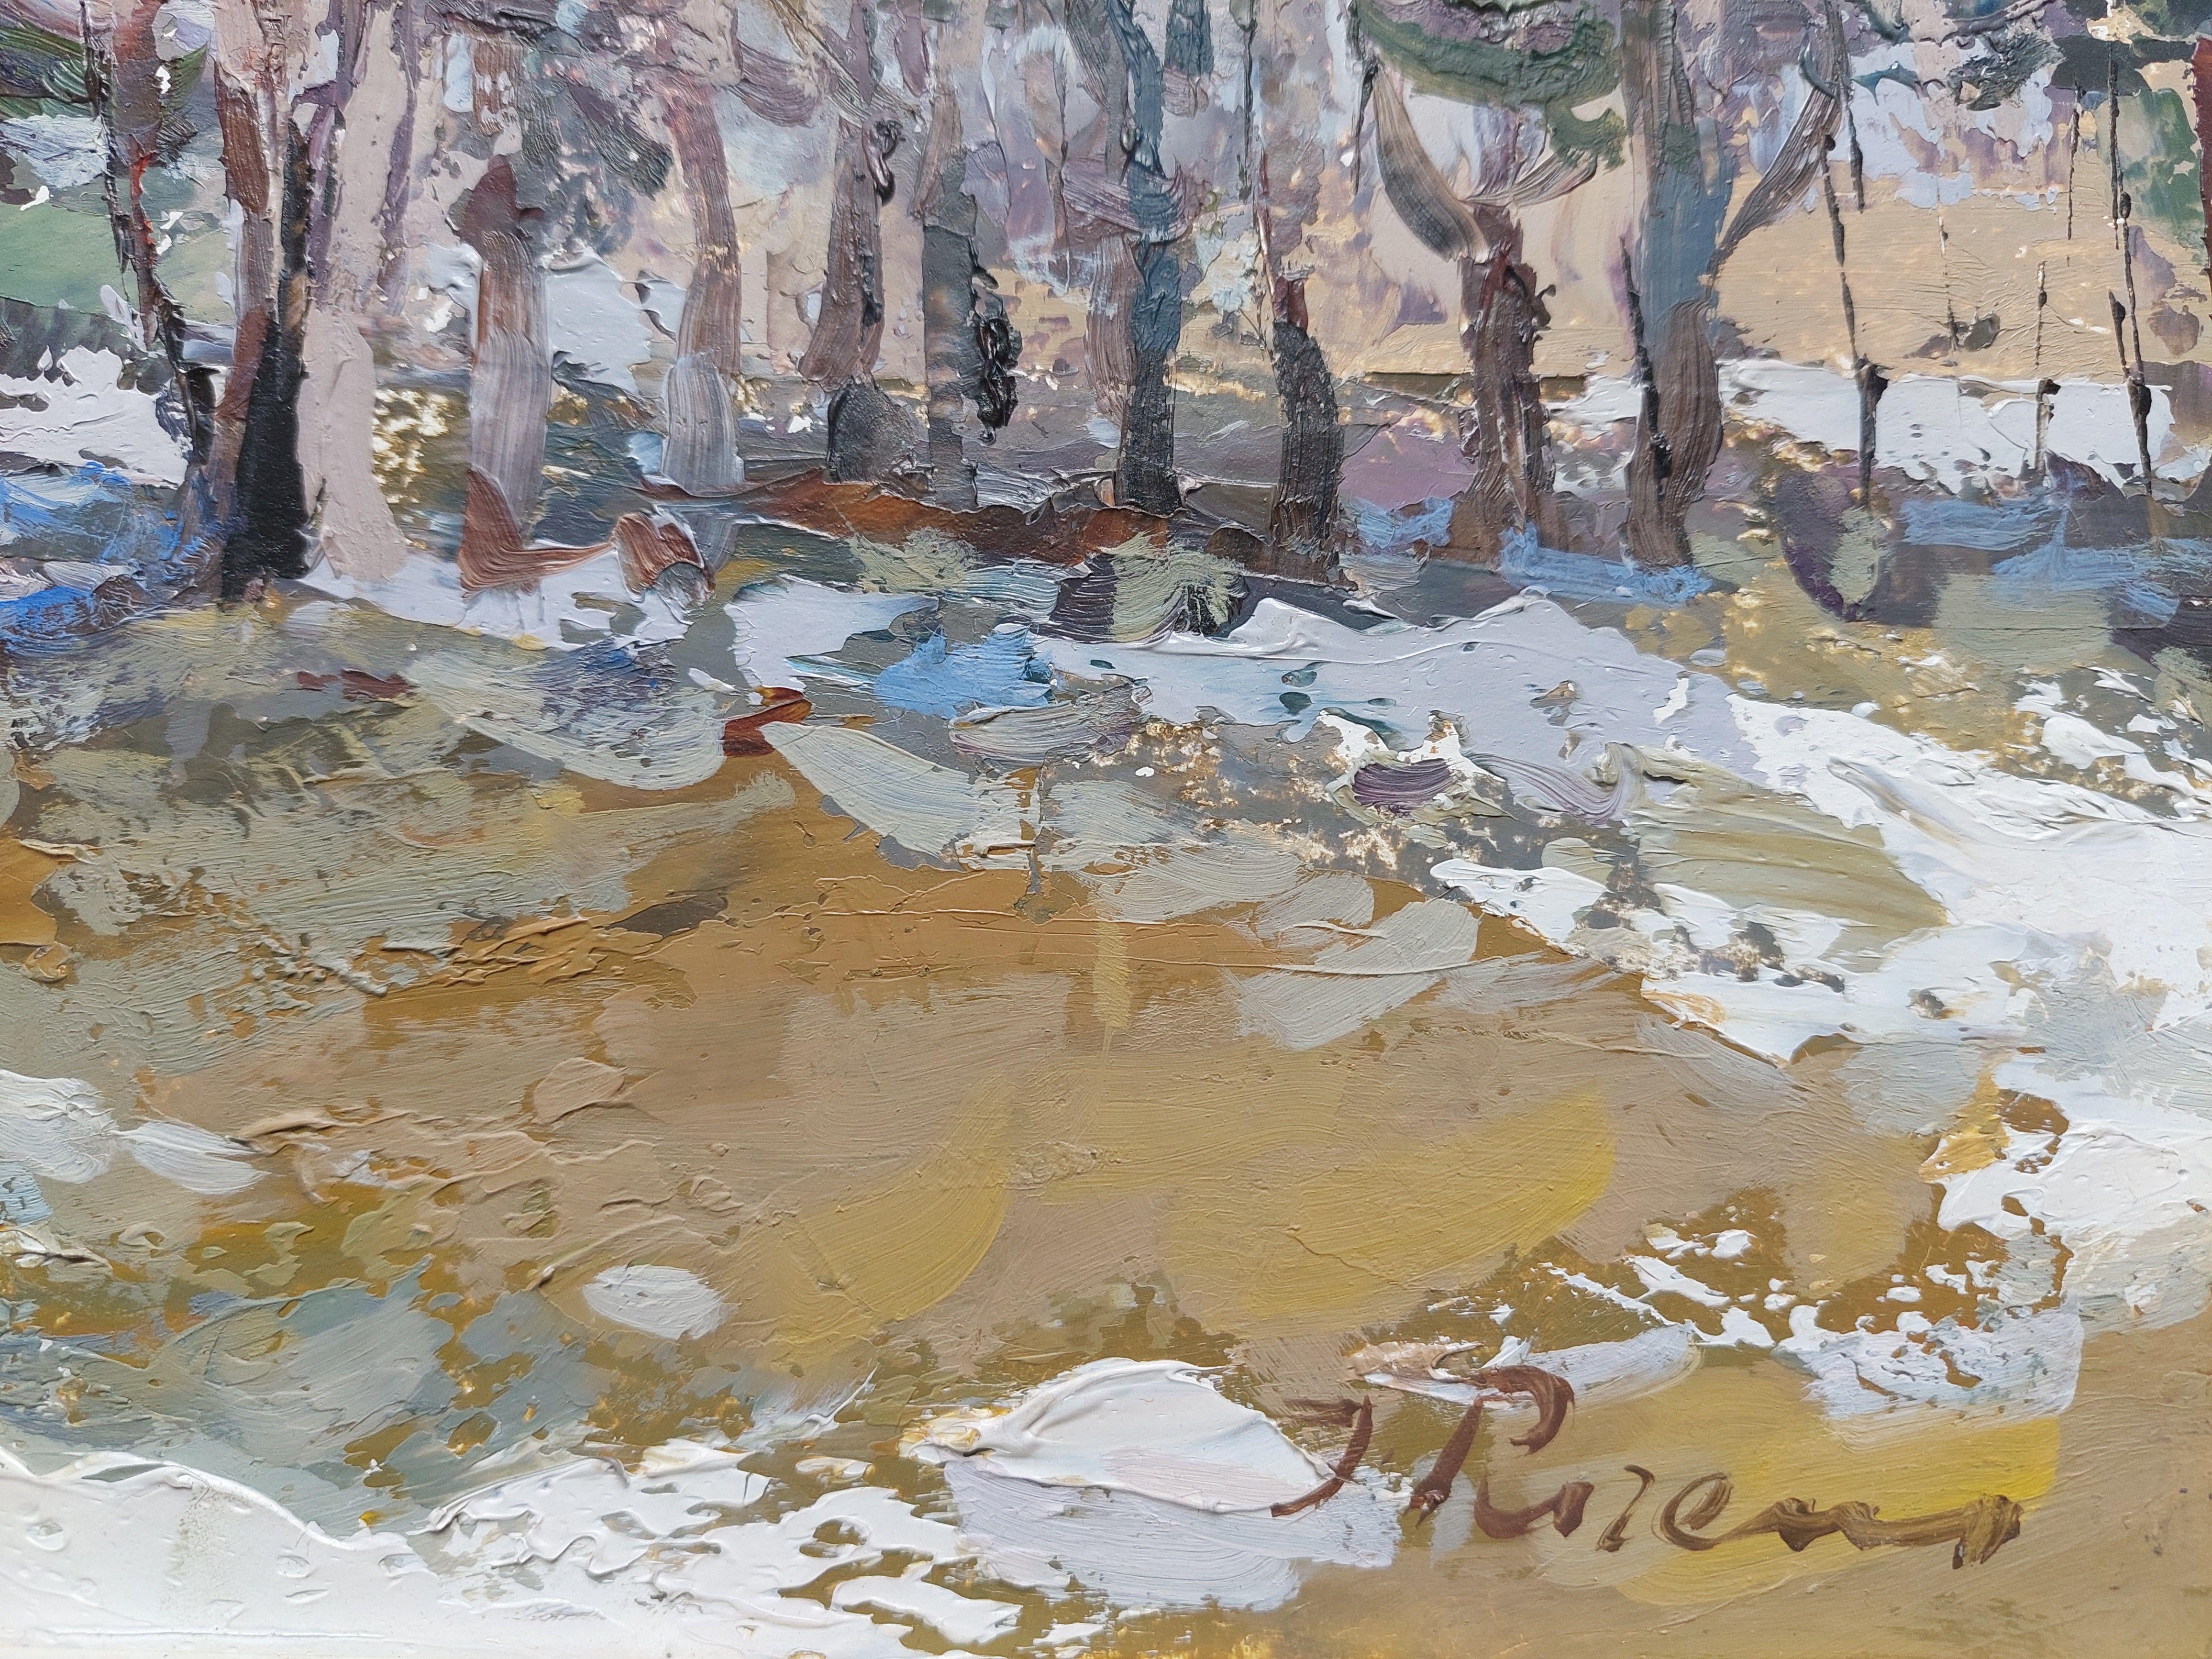 La première neige. 1989, huile sur carton, 32,5 x 40,5 cm - Painting de Purens Indulis